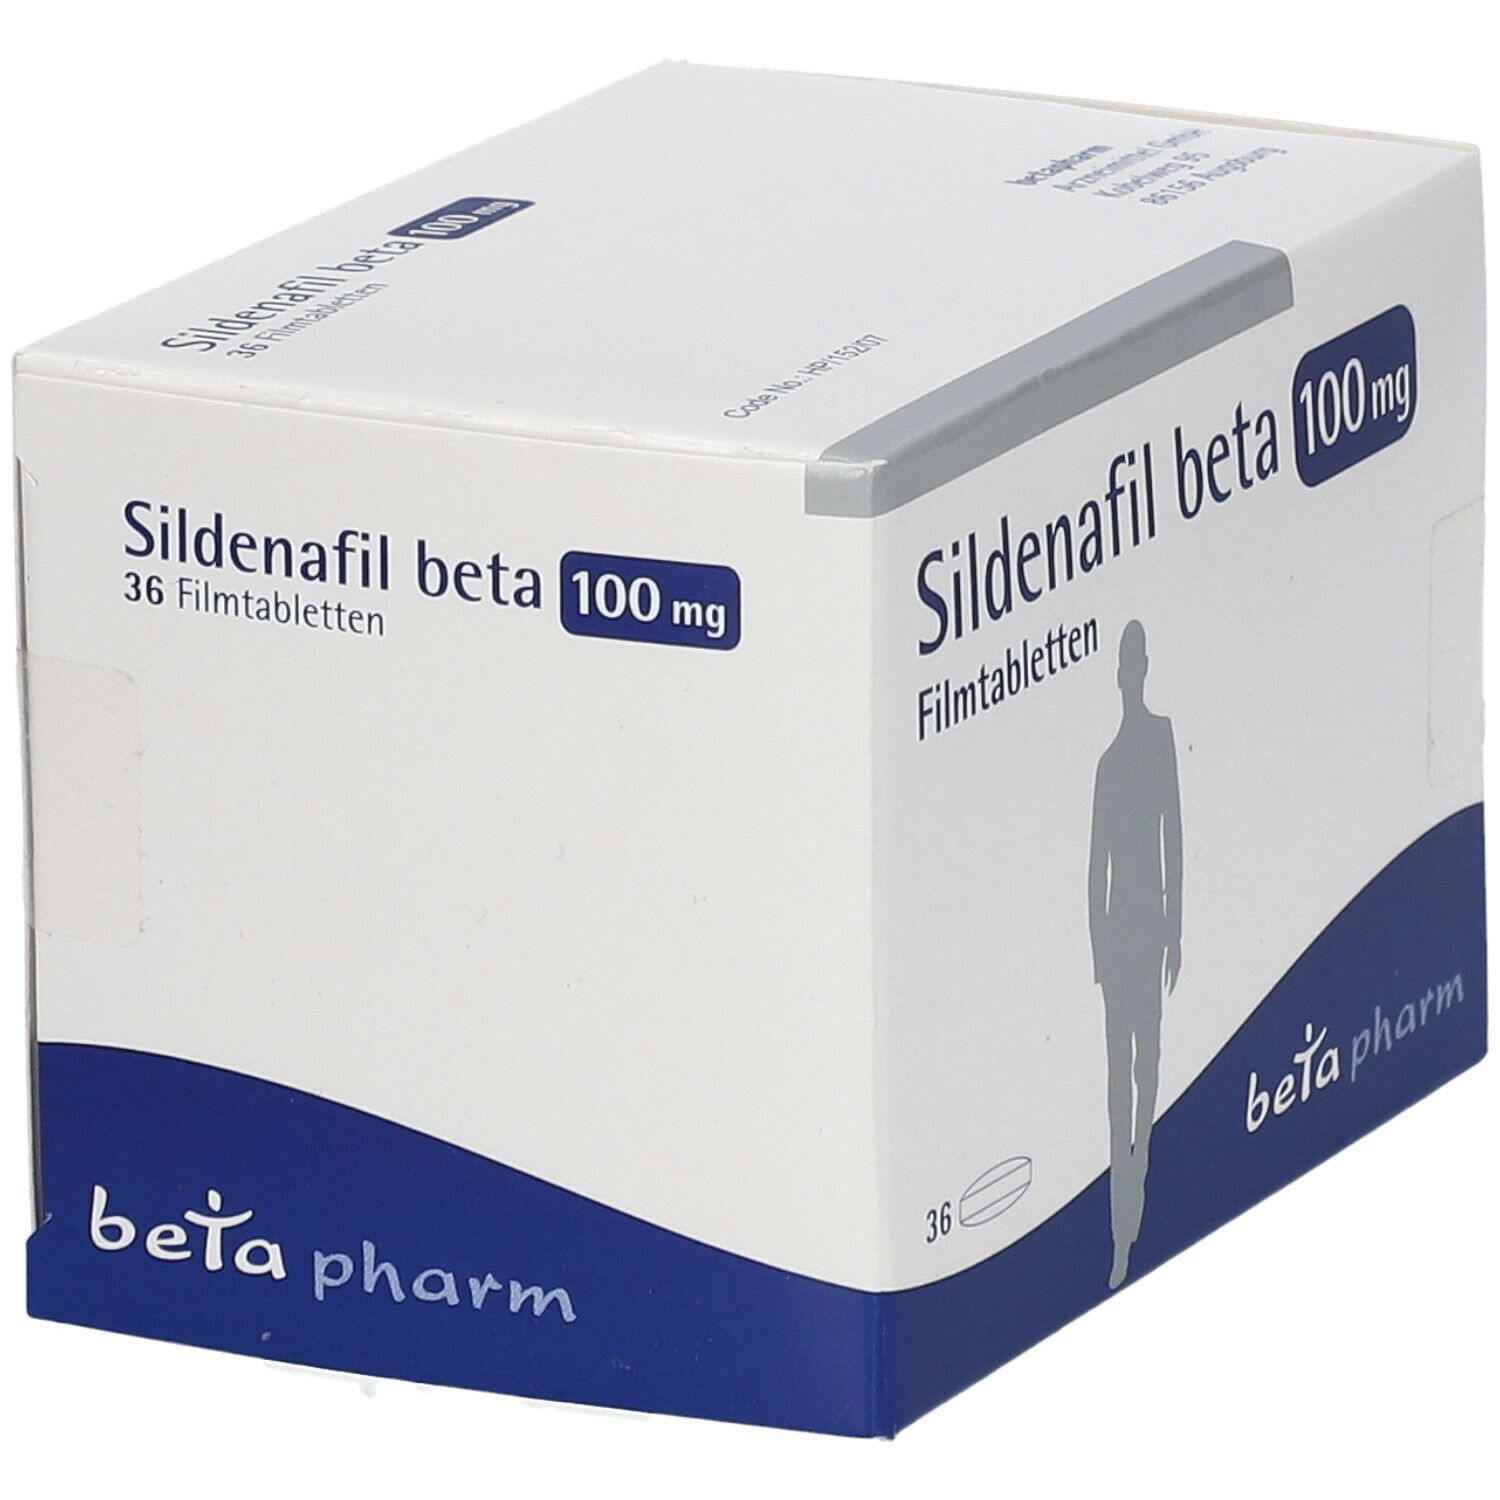 Sildenafil beta 100 mg